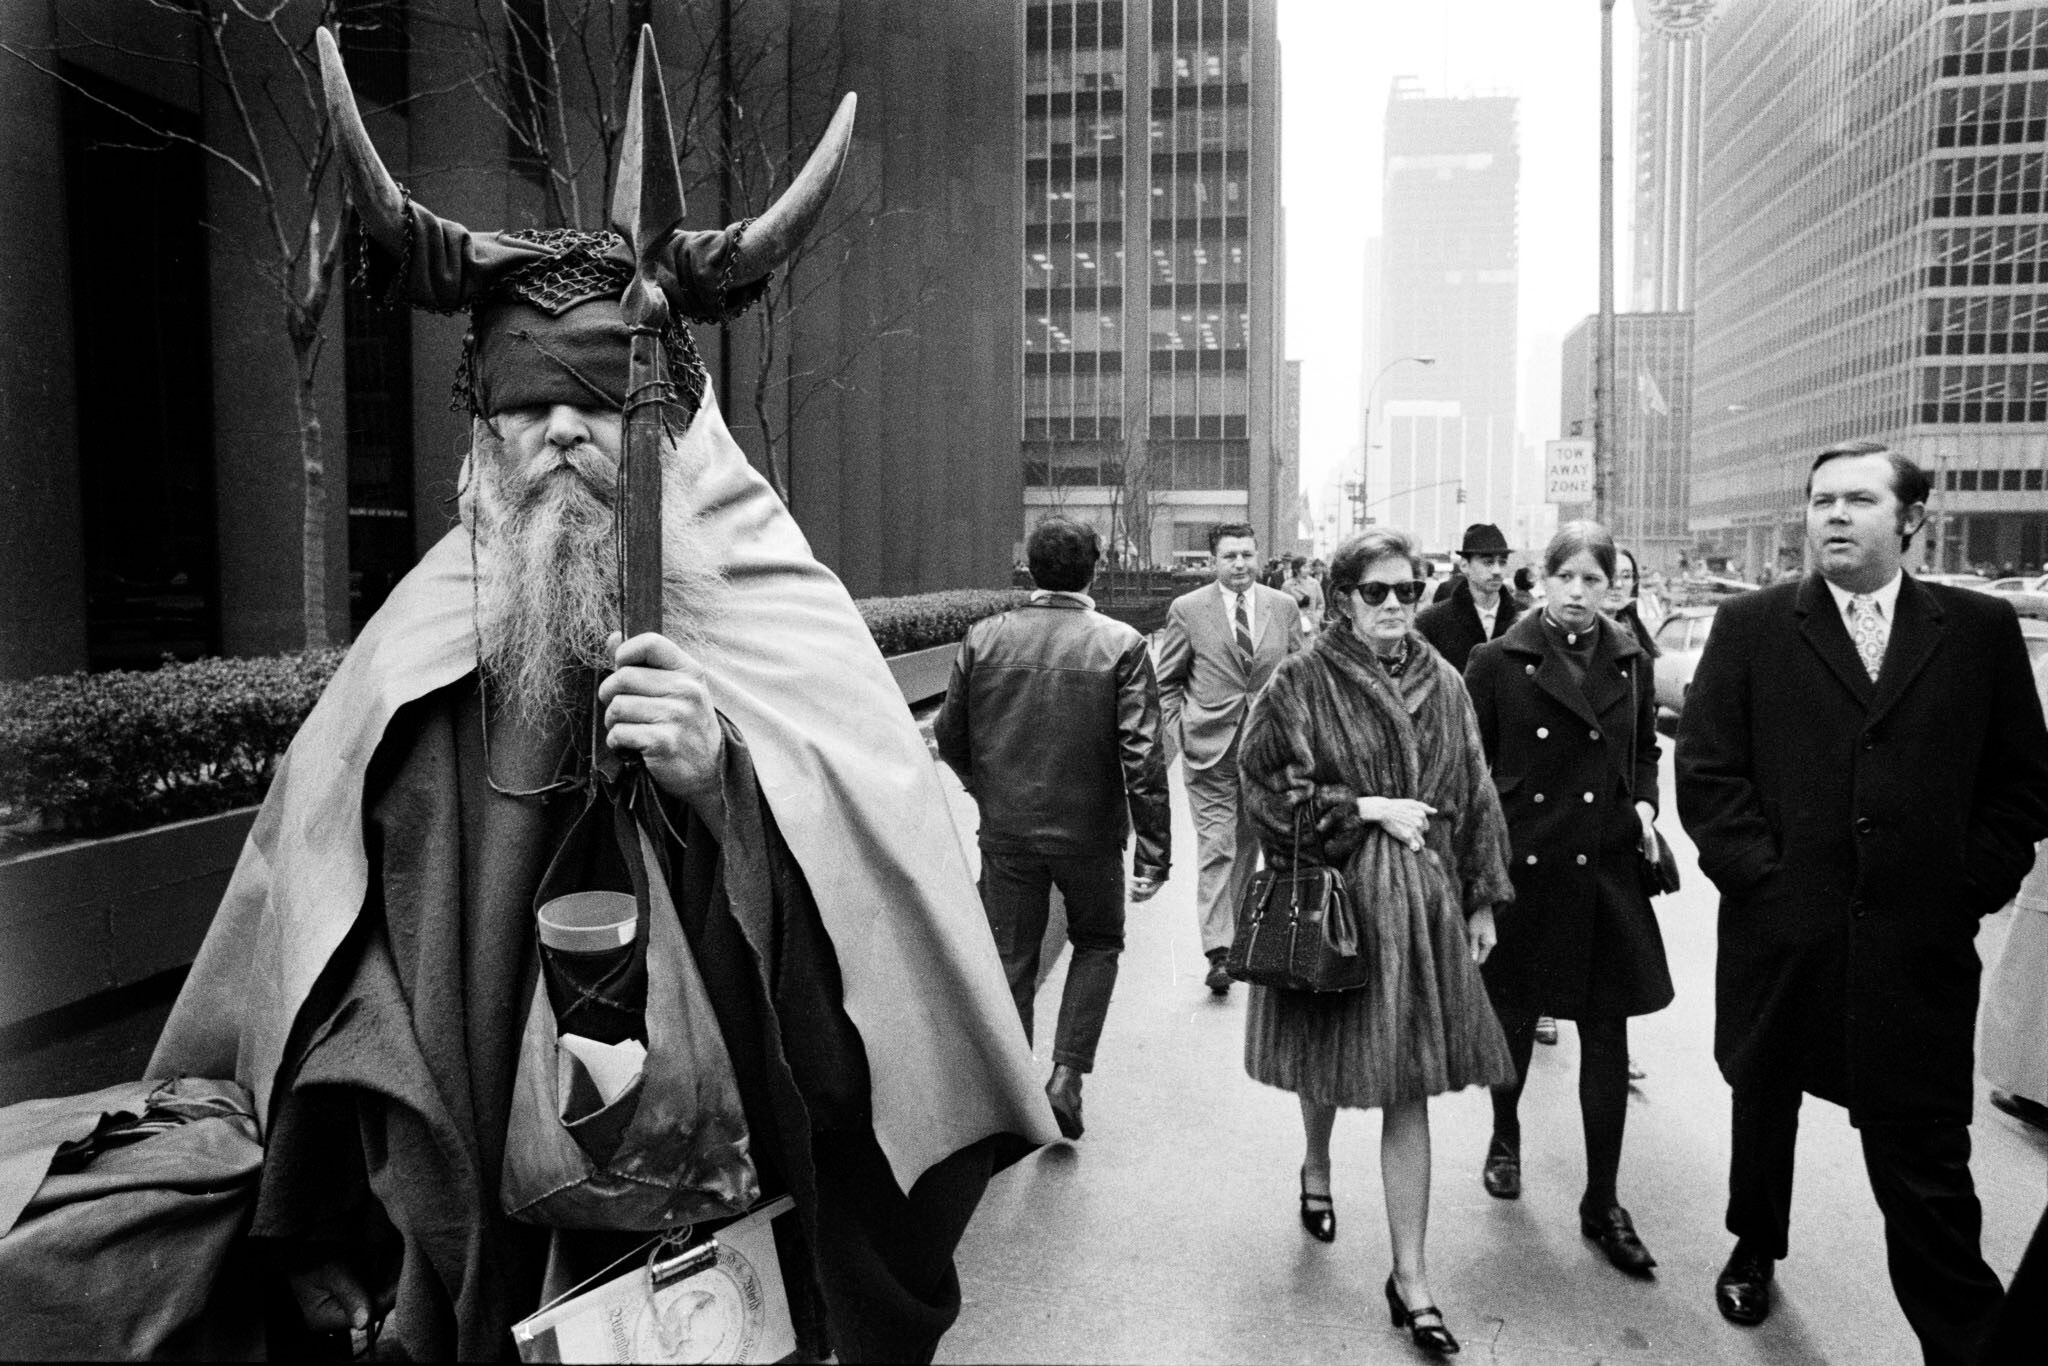 Викинг в Нью-Йорке, 1970-е. (Слепой уличный музыкант Moondog / Луис Томас Хардин). Фотограф Питер Мартенс 